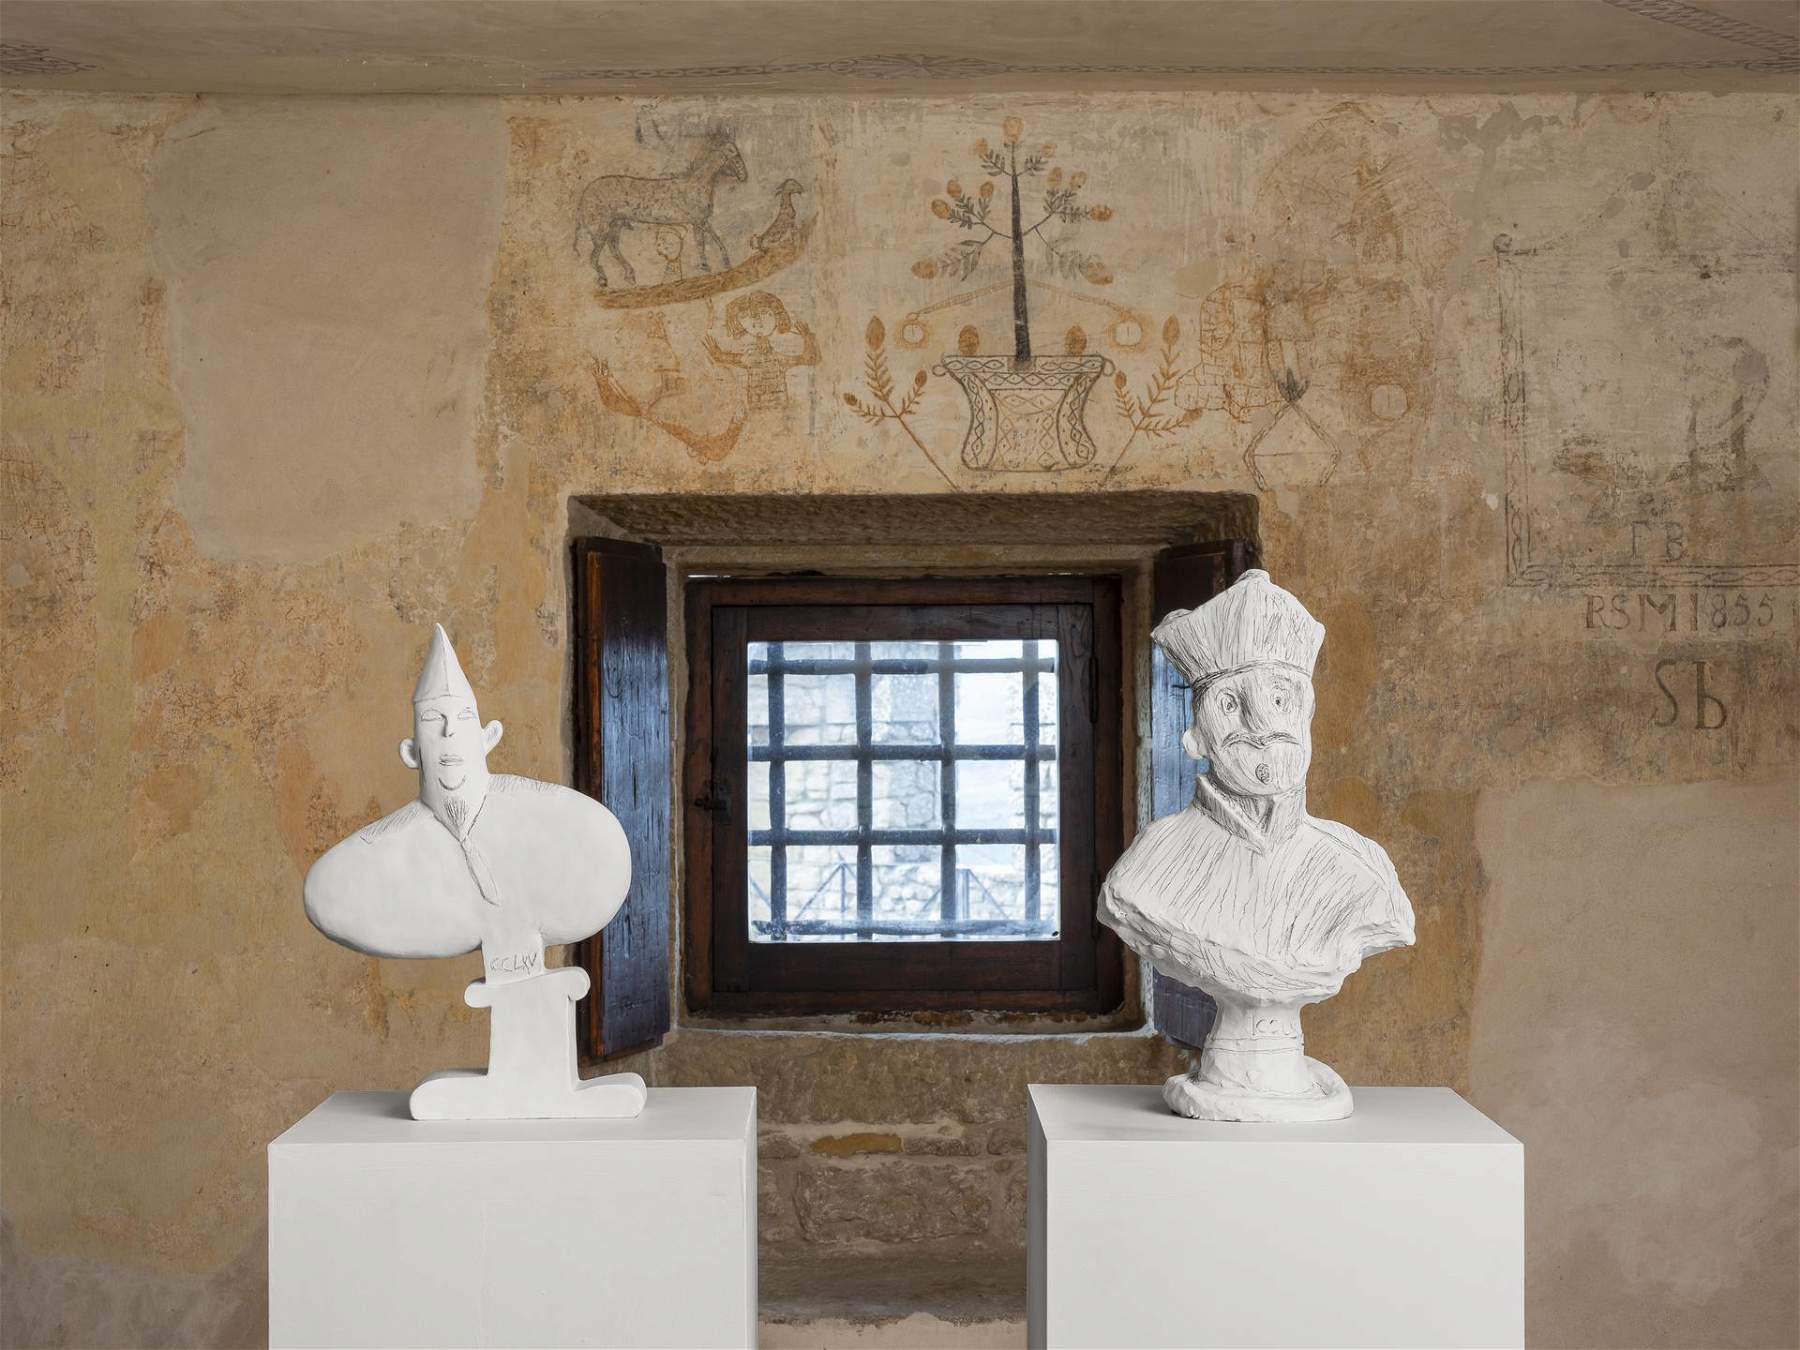 San Marino, Vedovamazzei's exhibition involving three exhibition venues opens